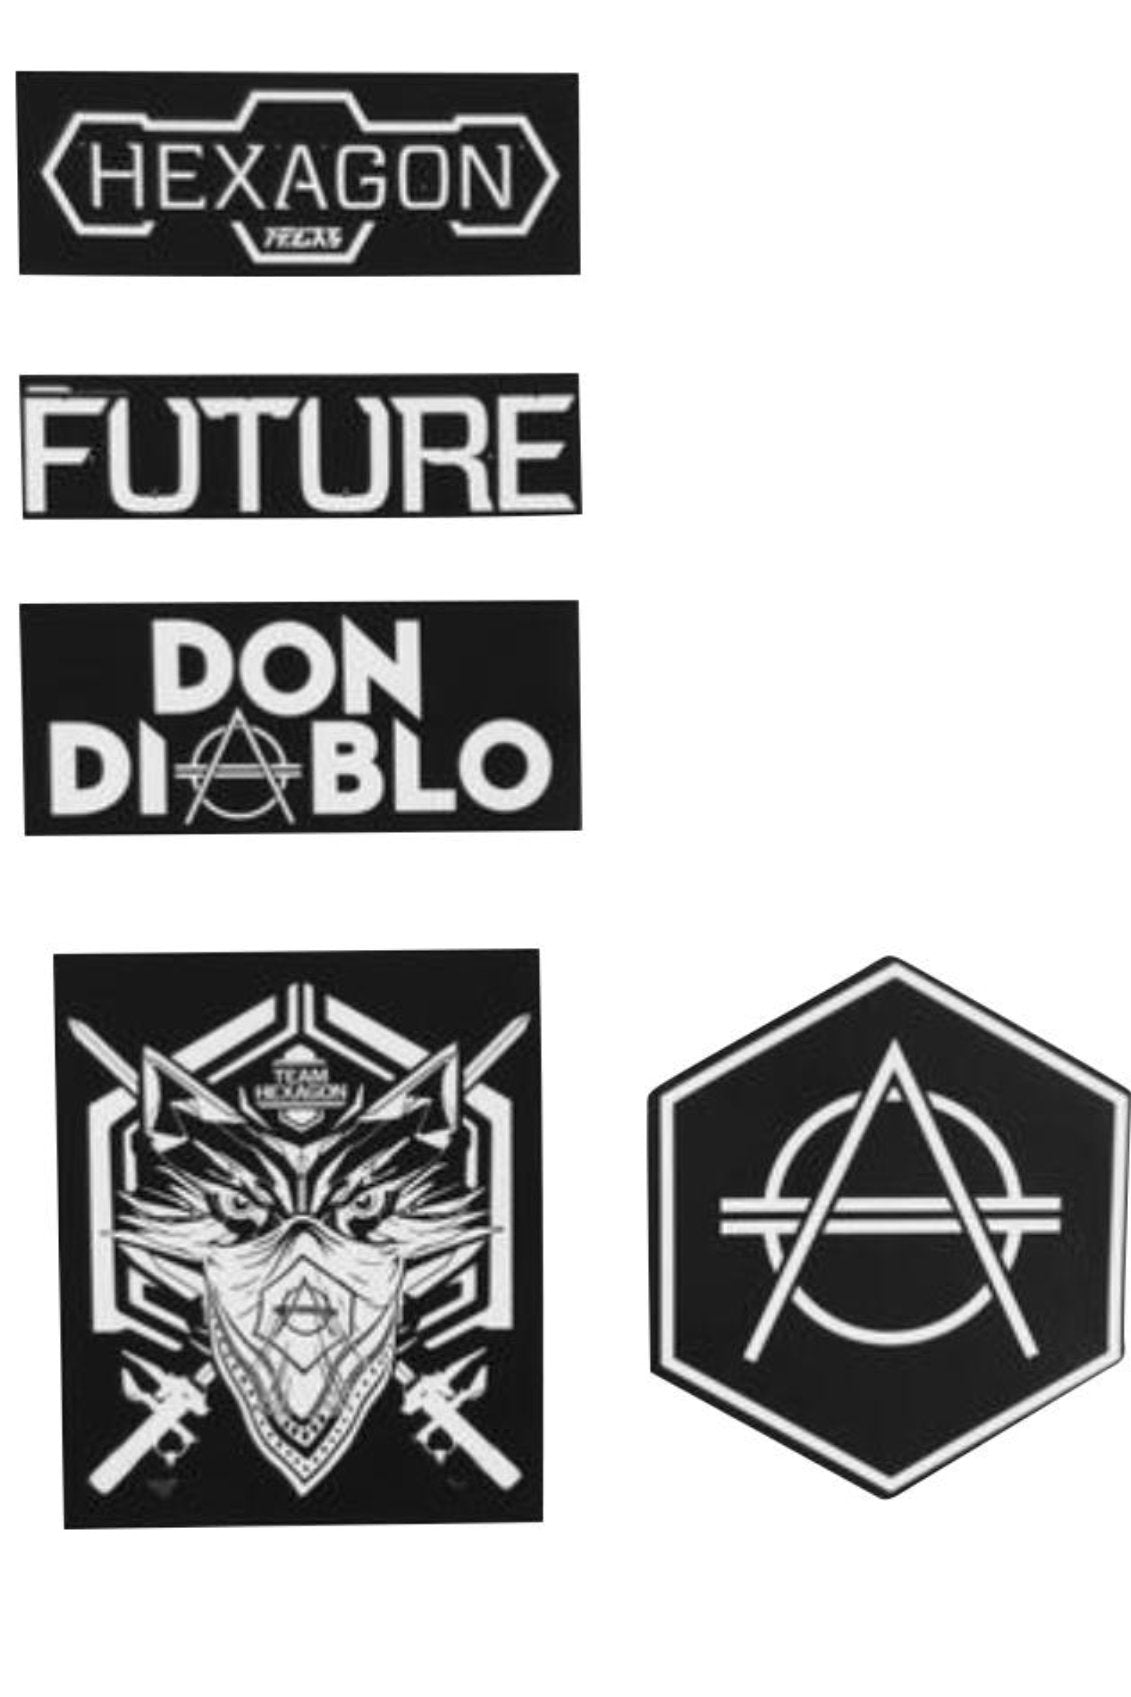 5pcs Hexagon Sticker set - HEXAGON - Don Diablo - Hexagon